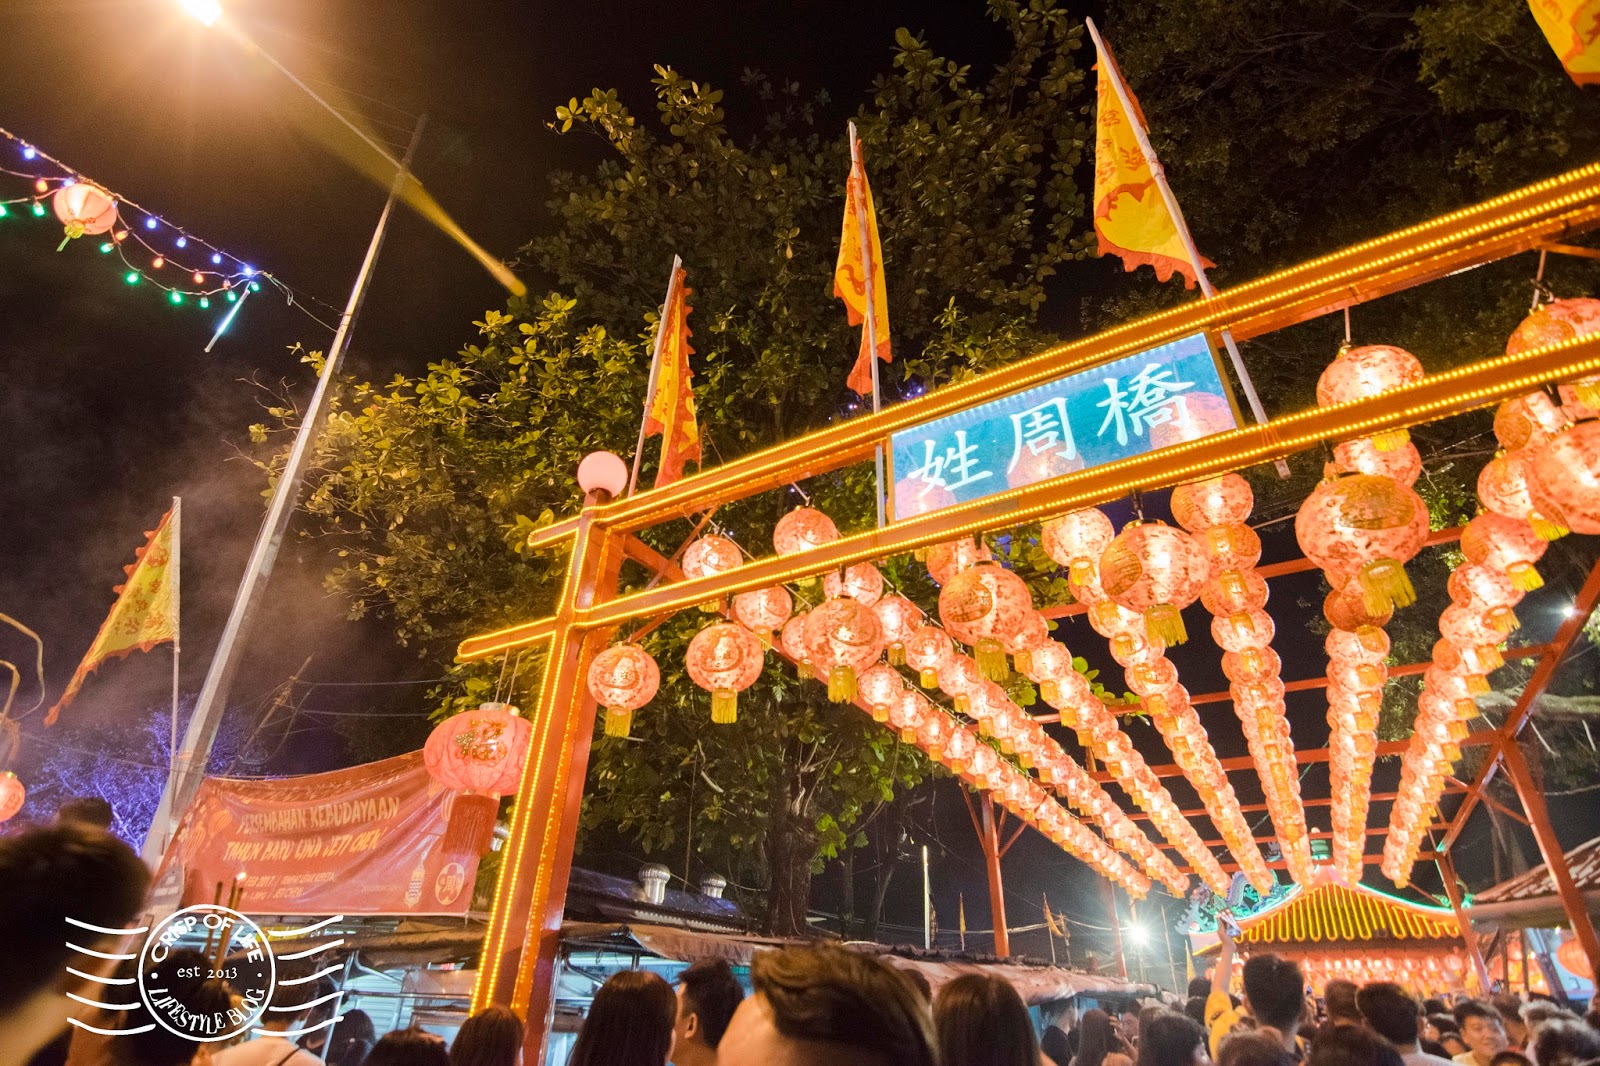 Chew Jetty Jade Emperor Festival